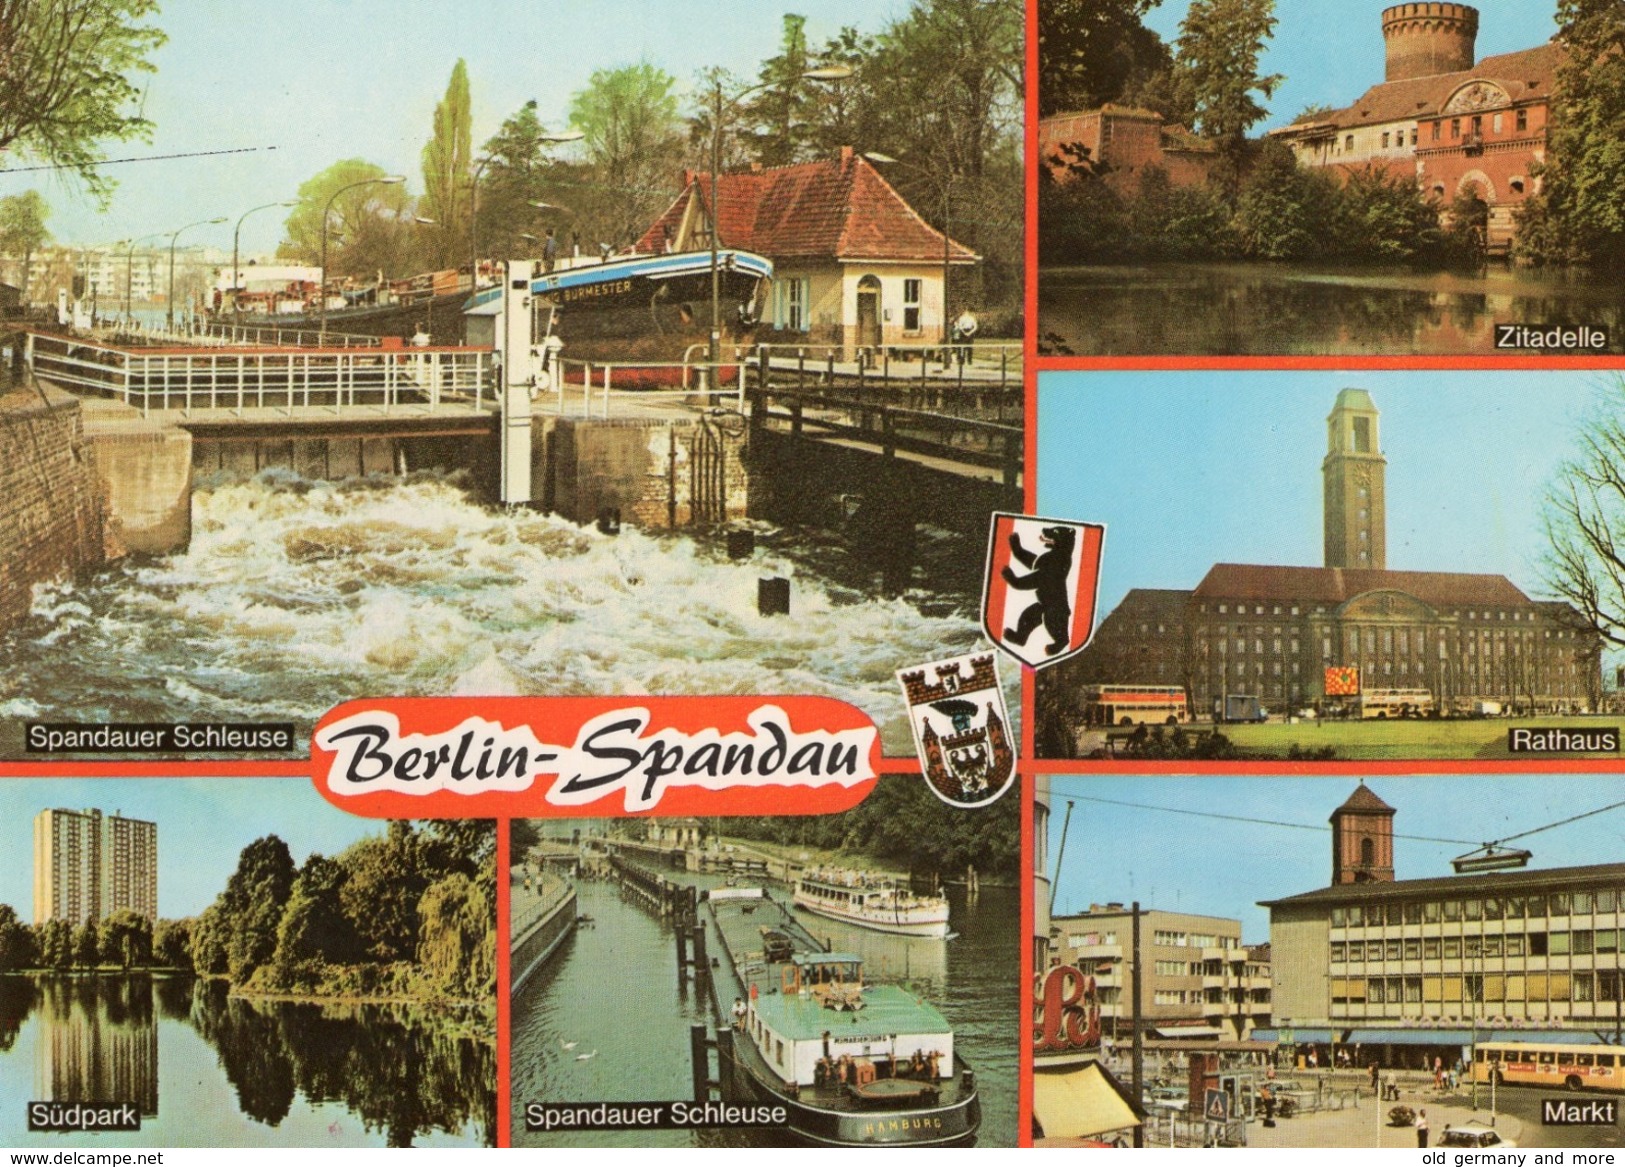 Berlin-Spandau - Spandau